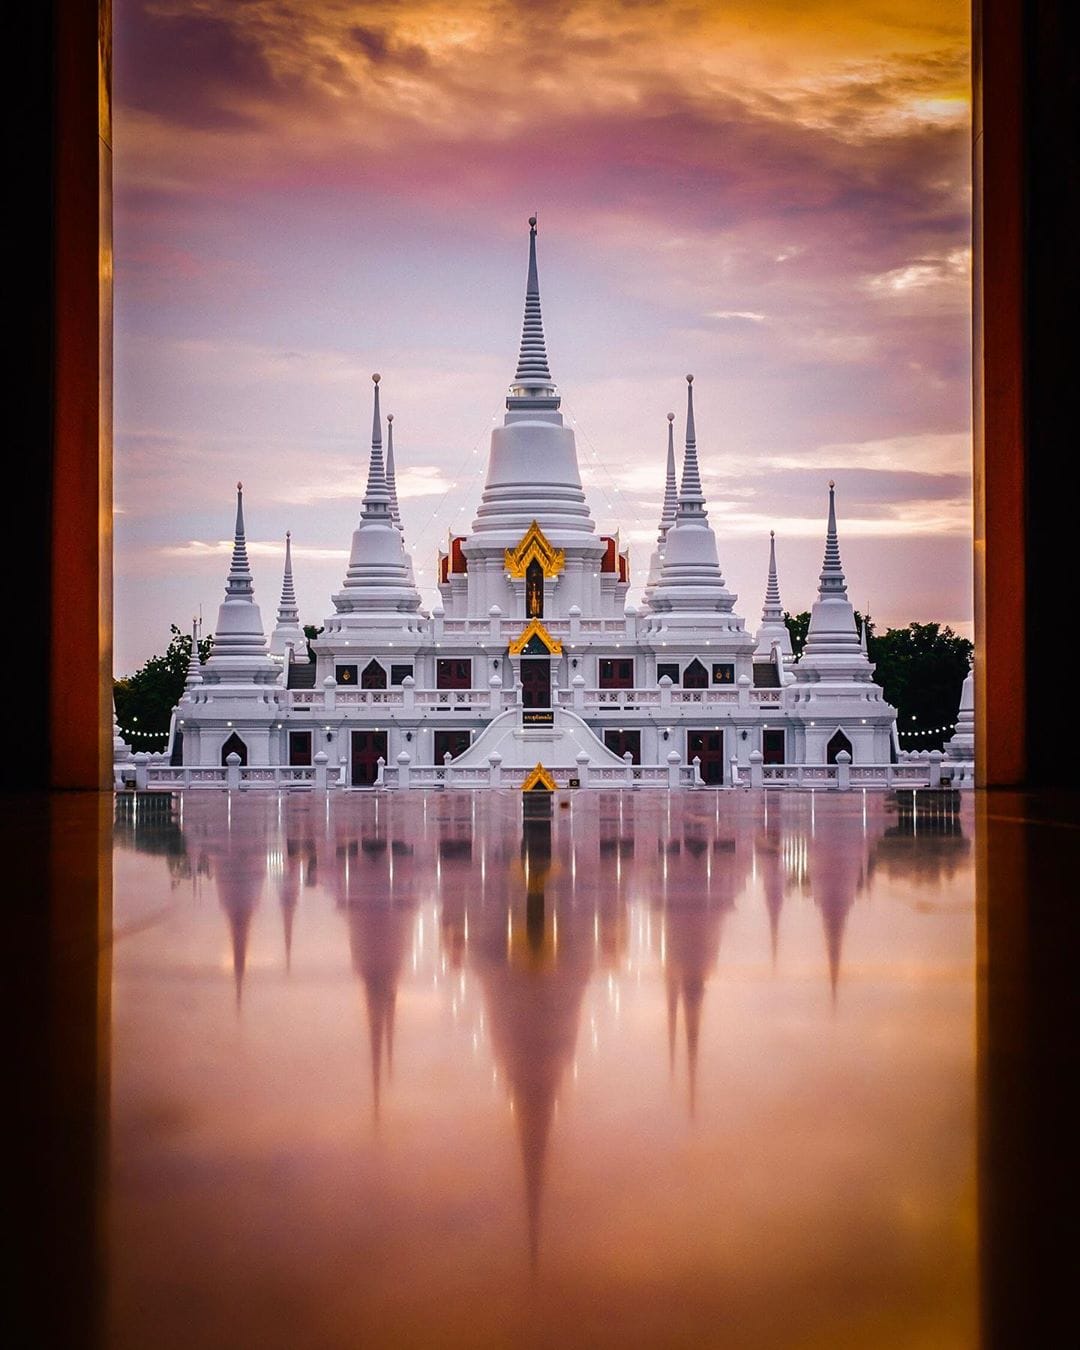 18 снимков удивительной архитектуры восточных храмов, которые восхищают своей оригинальностью 56